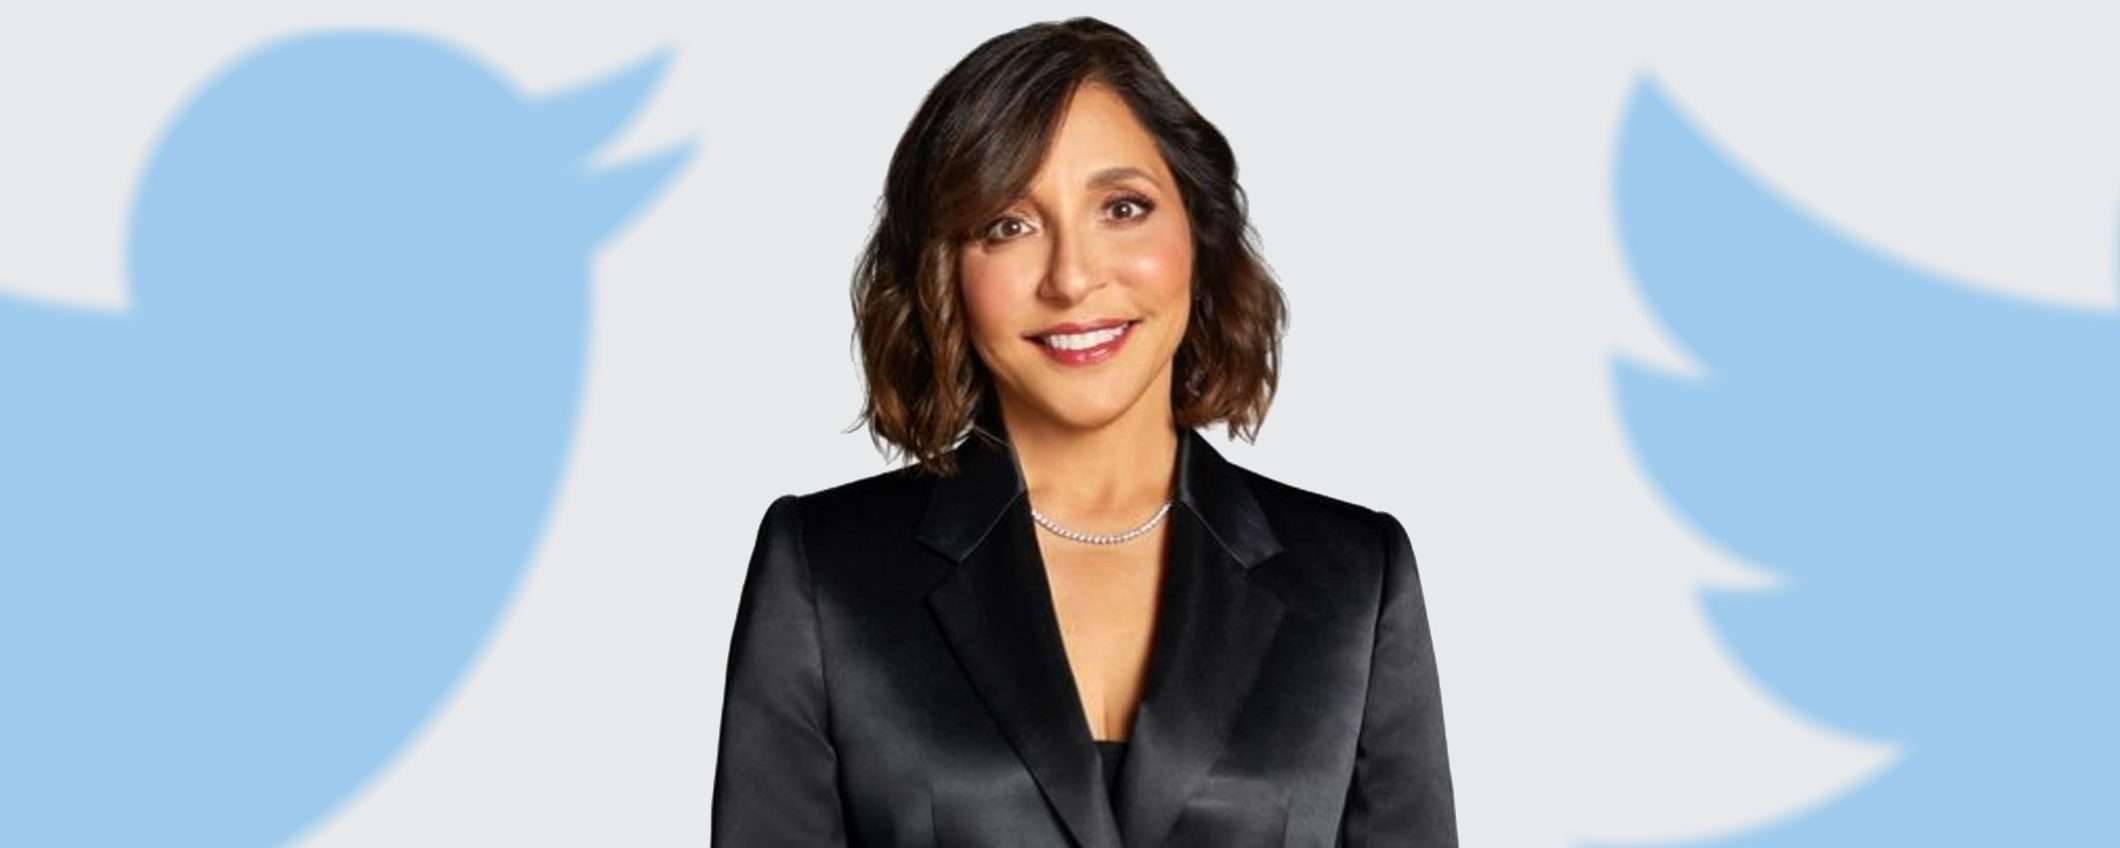 Linda Yaccarino è ufficialmente il nuovo CEO del Twitter 2.0